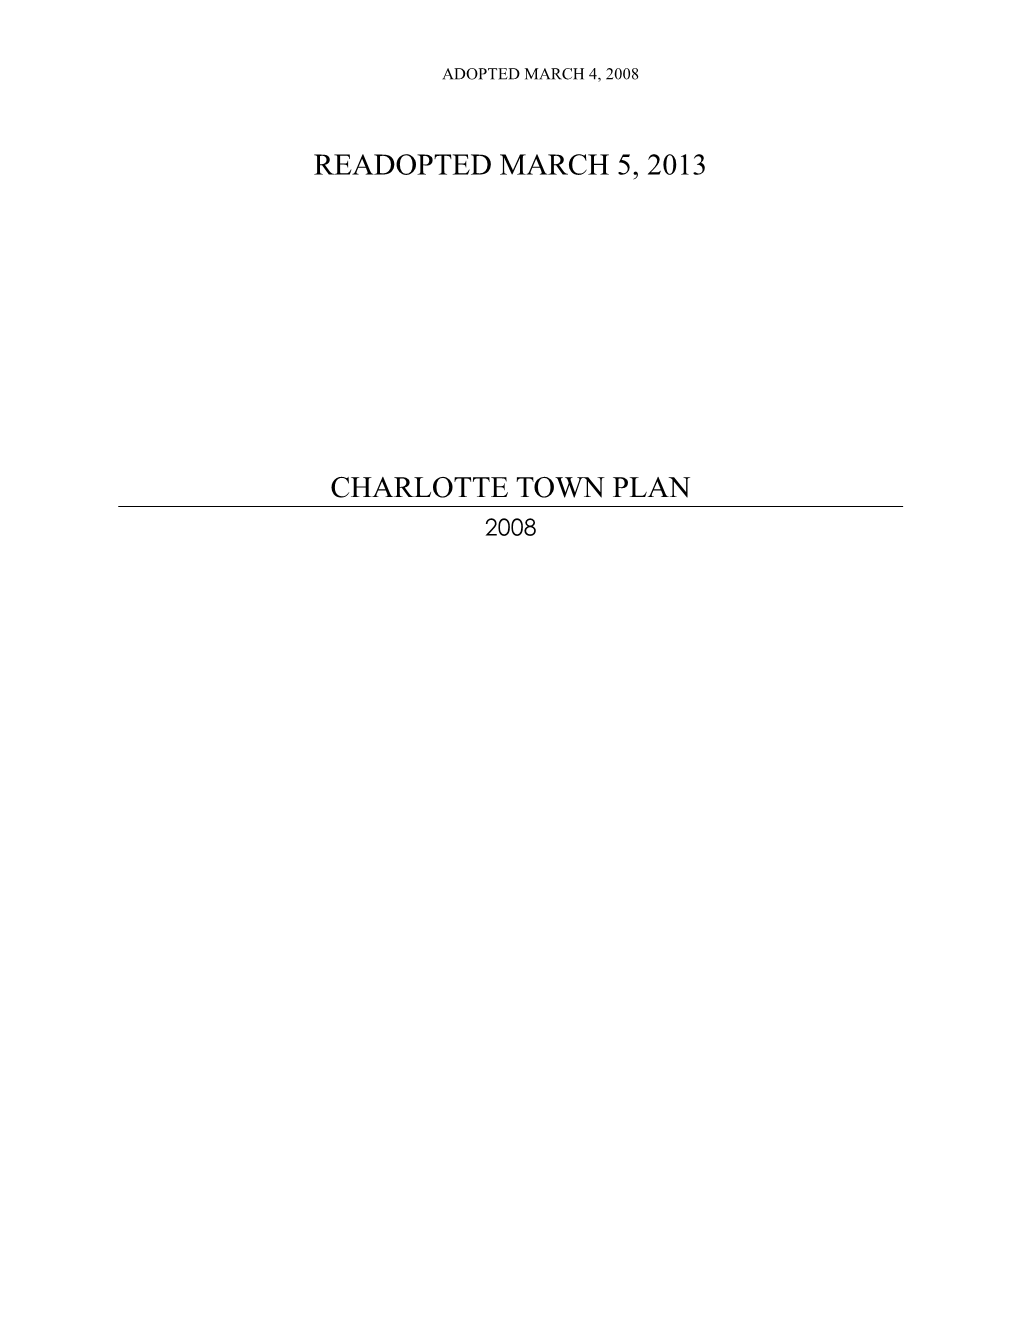 Charlotte Town Plan 2008